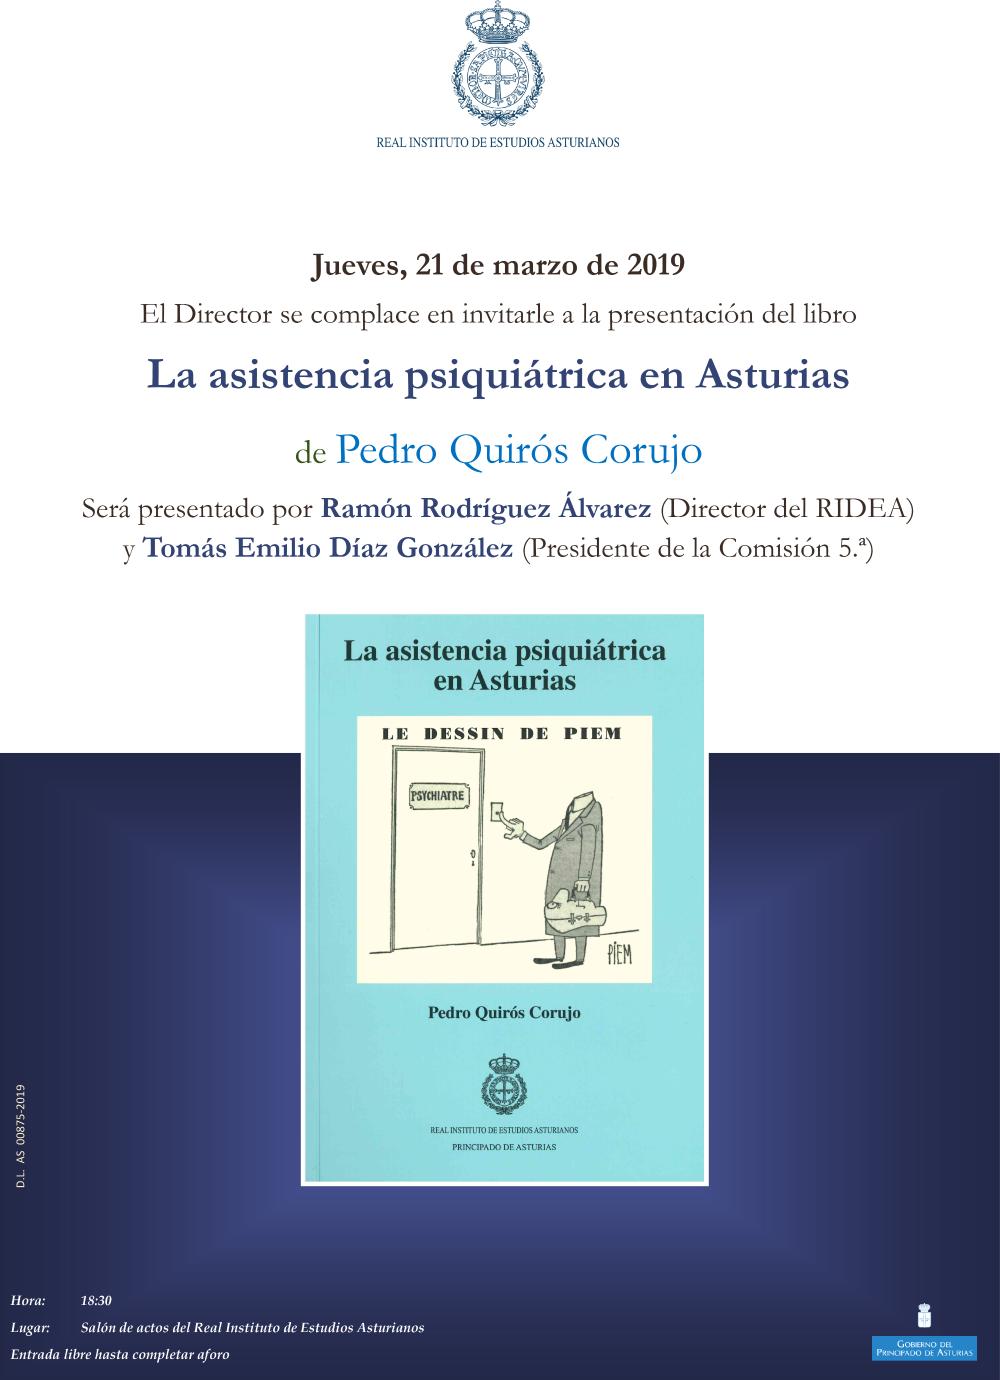 Imagen - Presentación del libro La asistencia psiquiátrica en Asturias